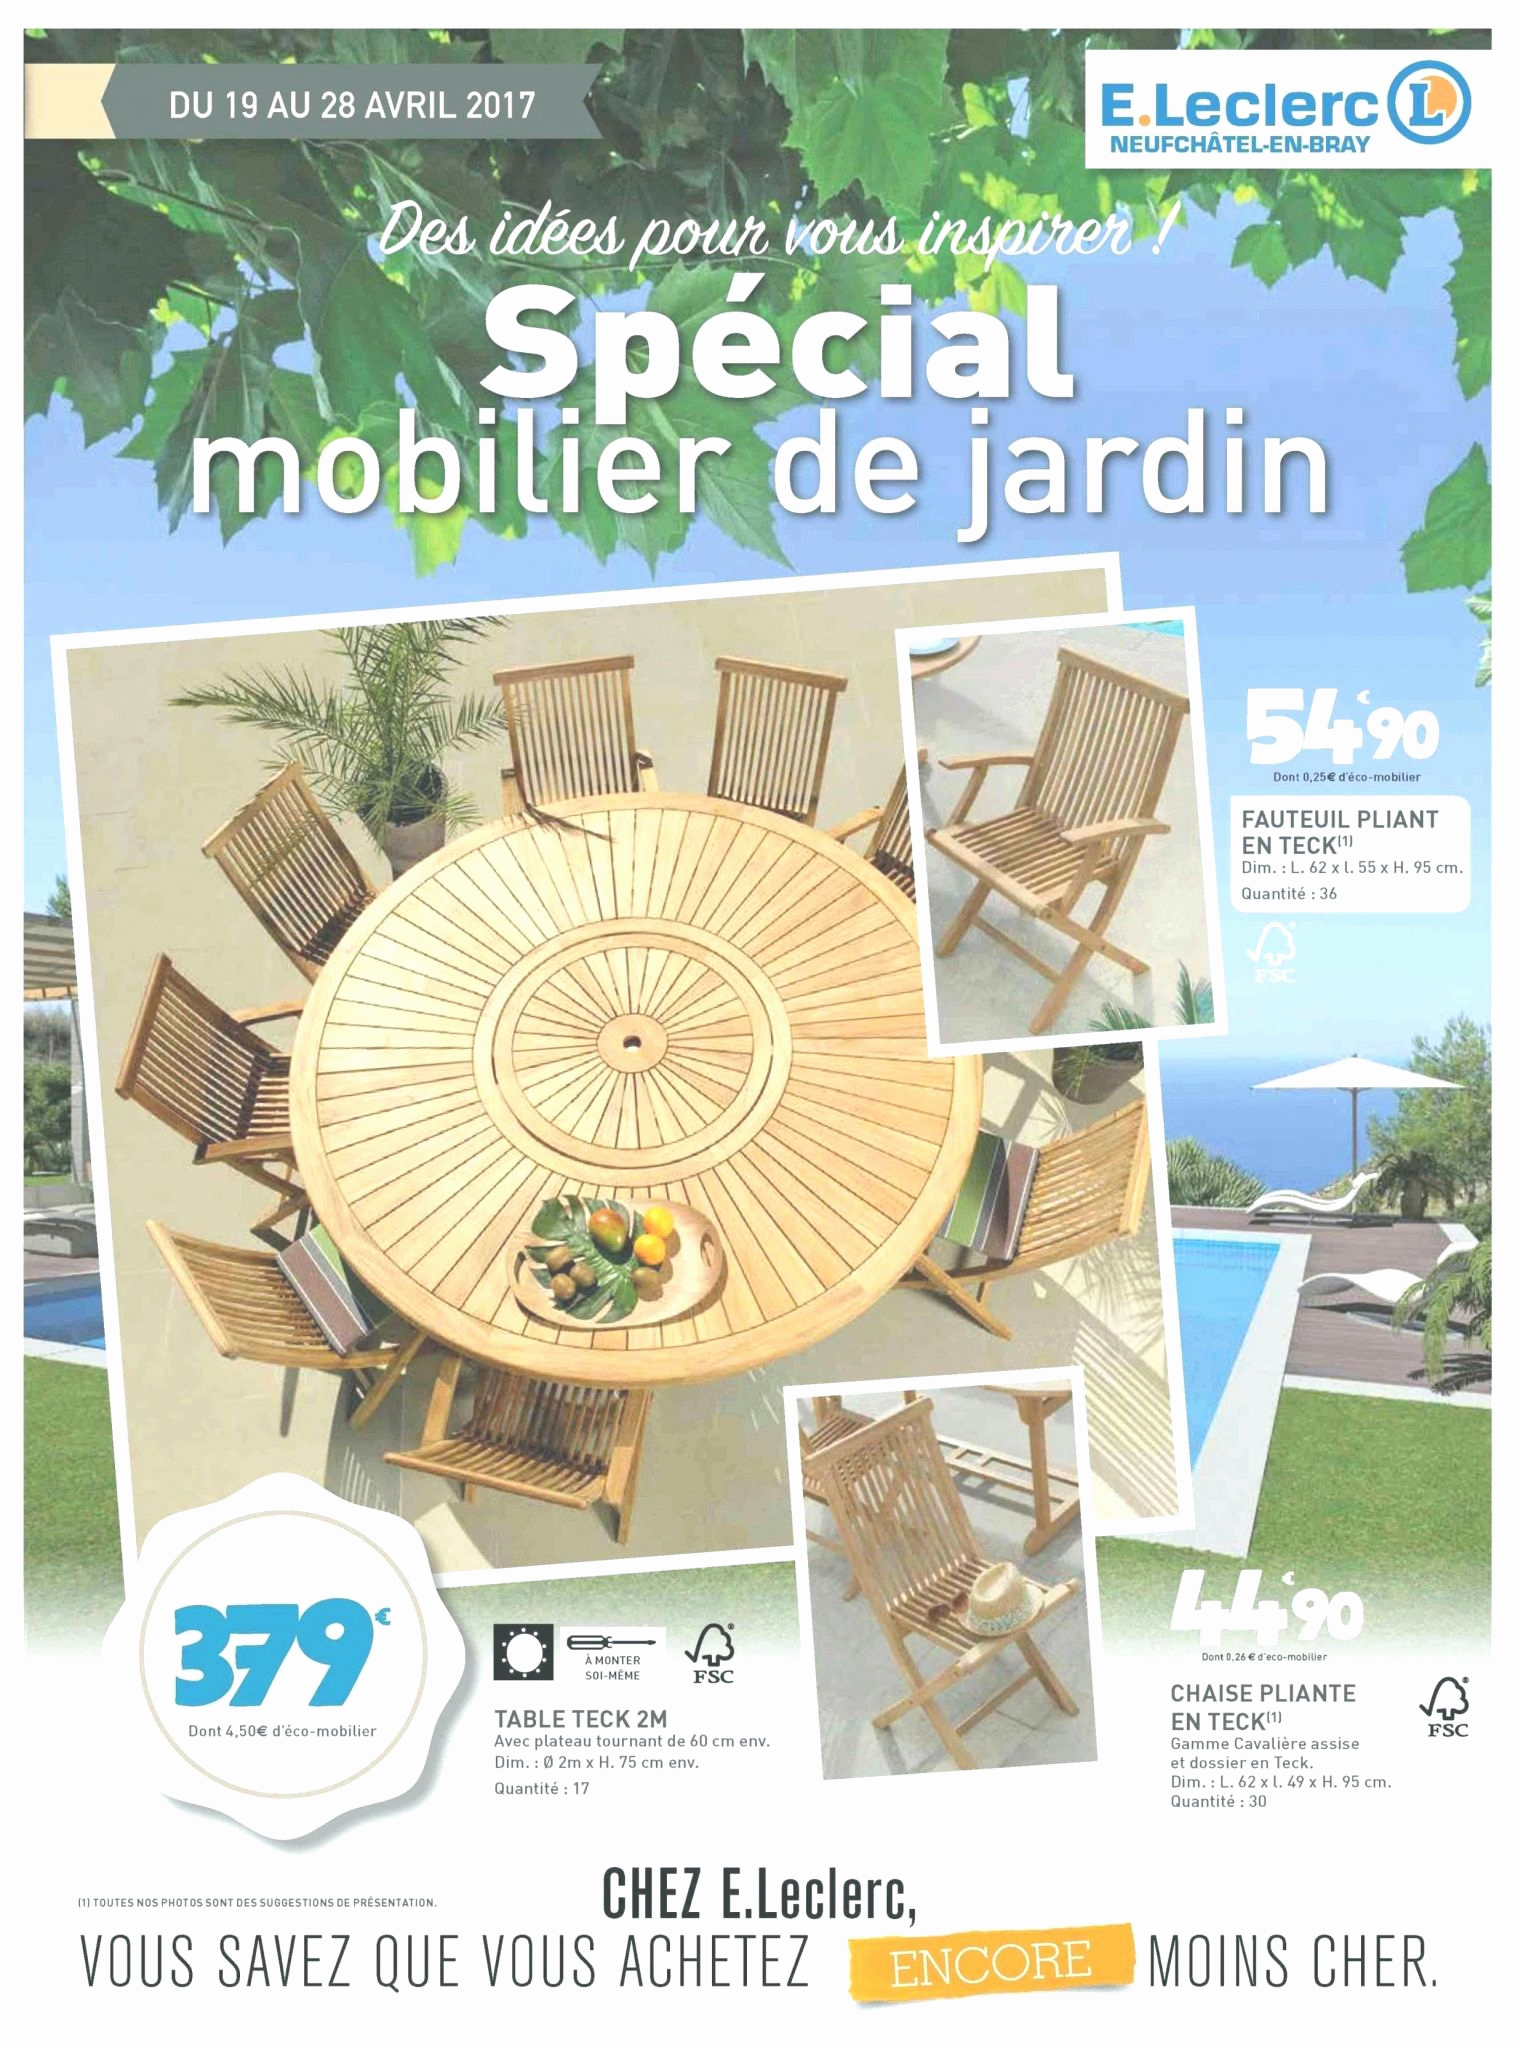 Salon De Jardin Moins Cher Luxe Salon De Jardin Leclerc Catalogue 2017 Le Meilleur De Table